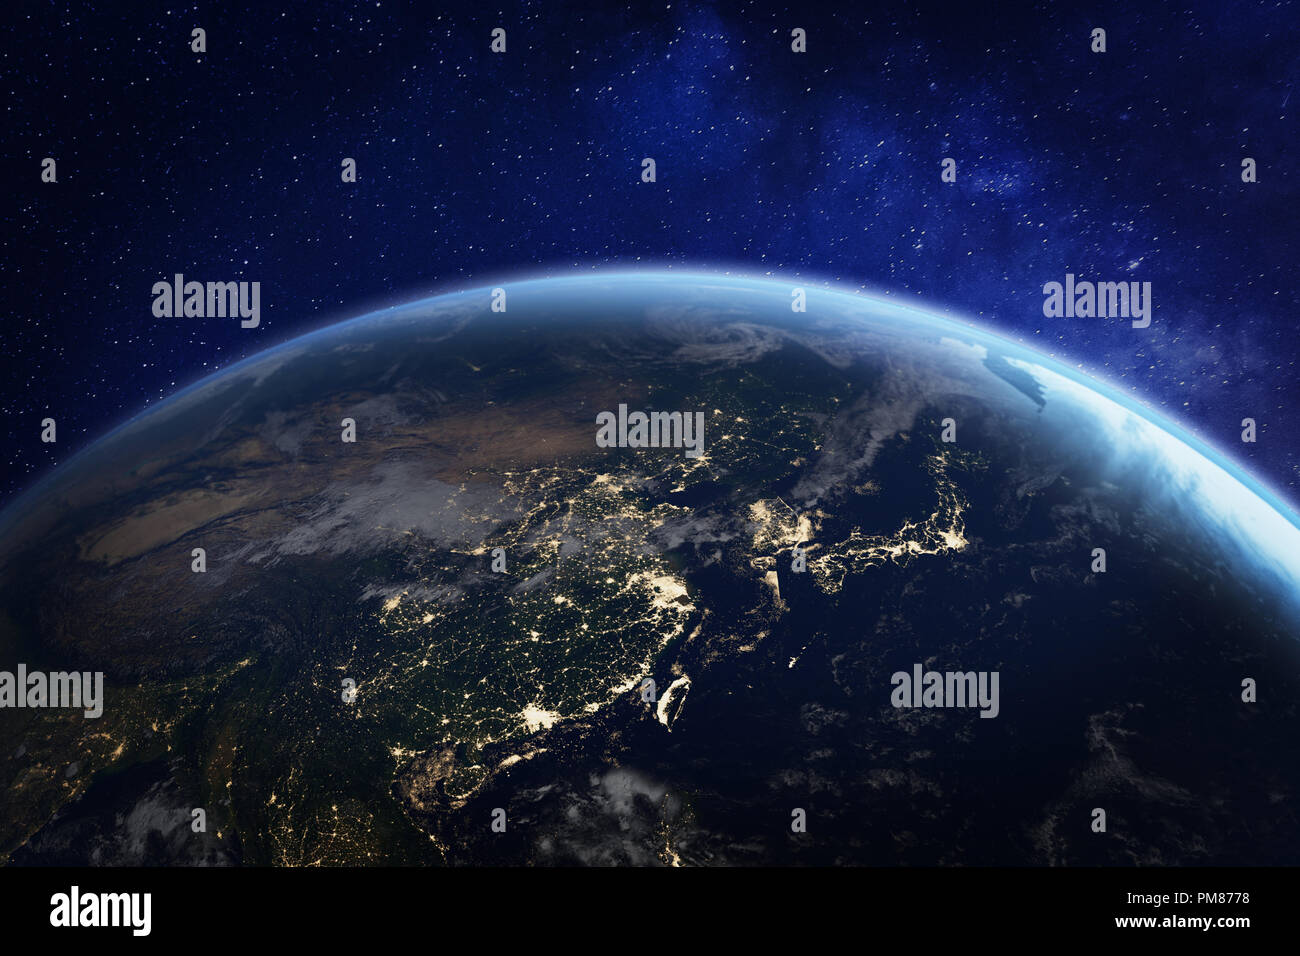 Asia di notte dallo spazio con le luci della città che mostra le attività umane in Cina, Giappone, Corea del Sud, Taiwan e altri paesi, rendering 3d del pianeta Eart Foto Stock